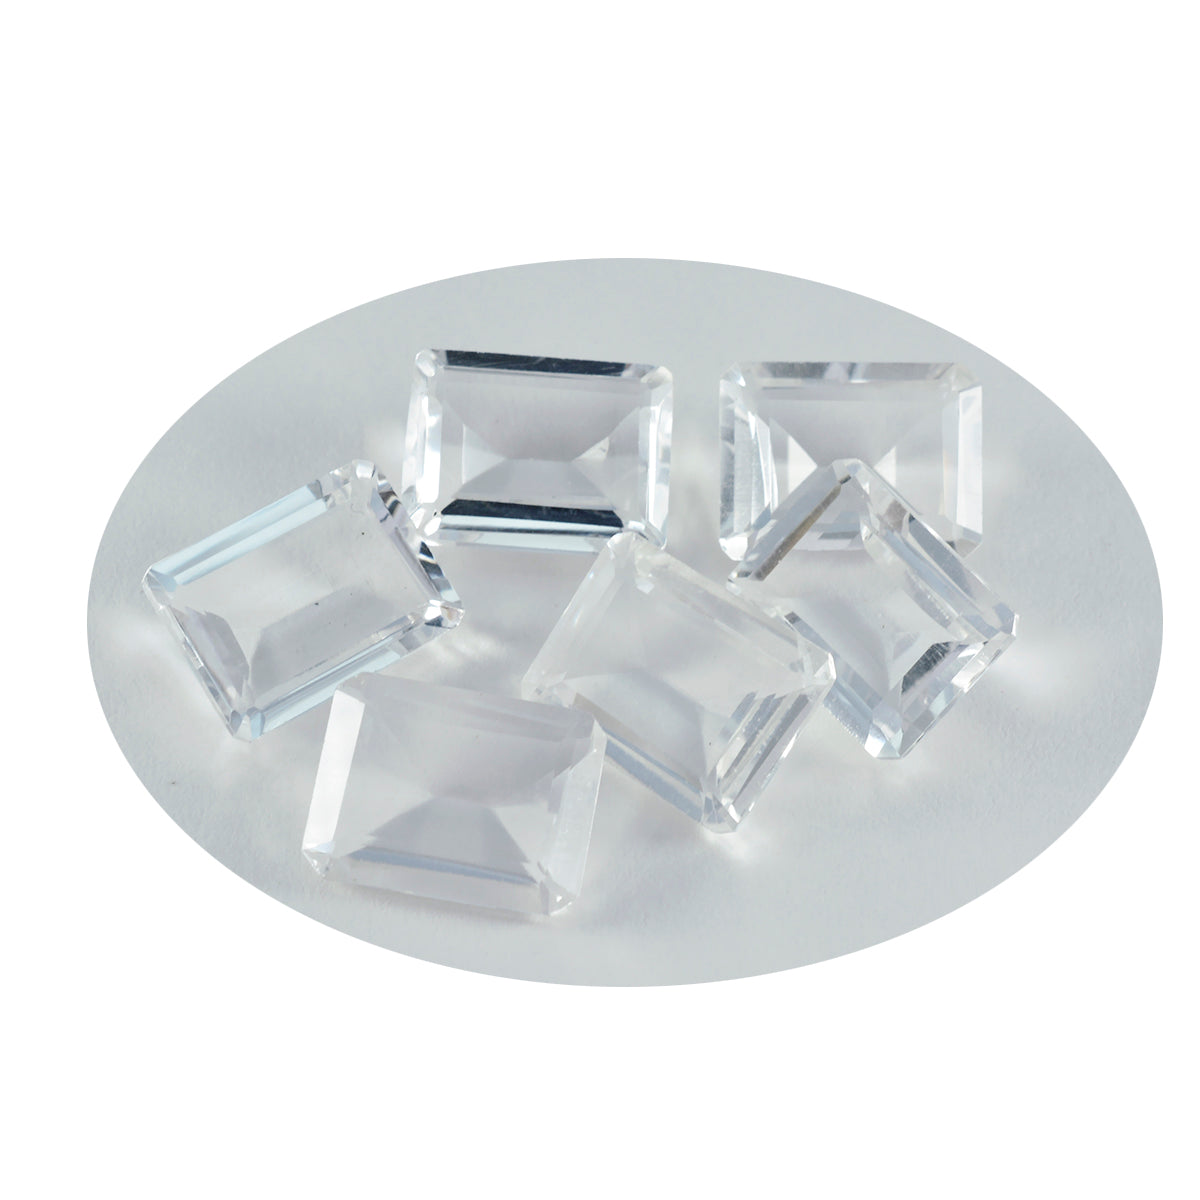 Riyogems 1pc quartz cristal blanc à facettes 10x14mm forme octogonale beauté qualité pierre précieuse